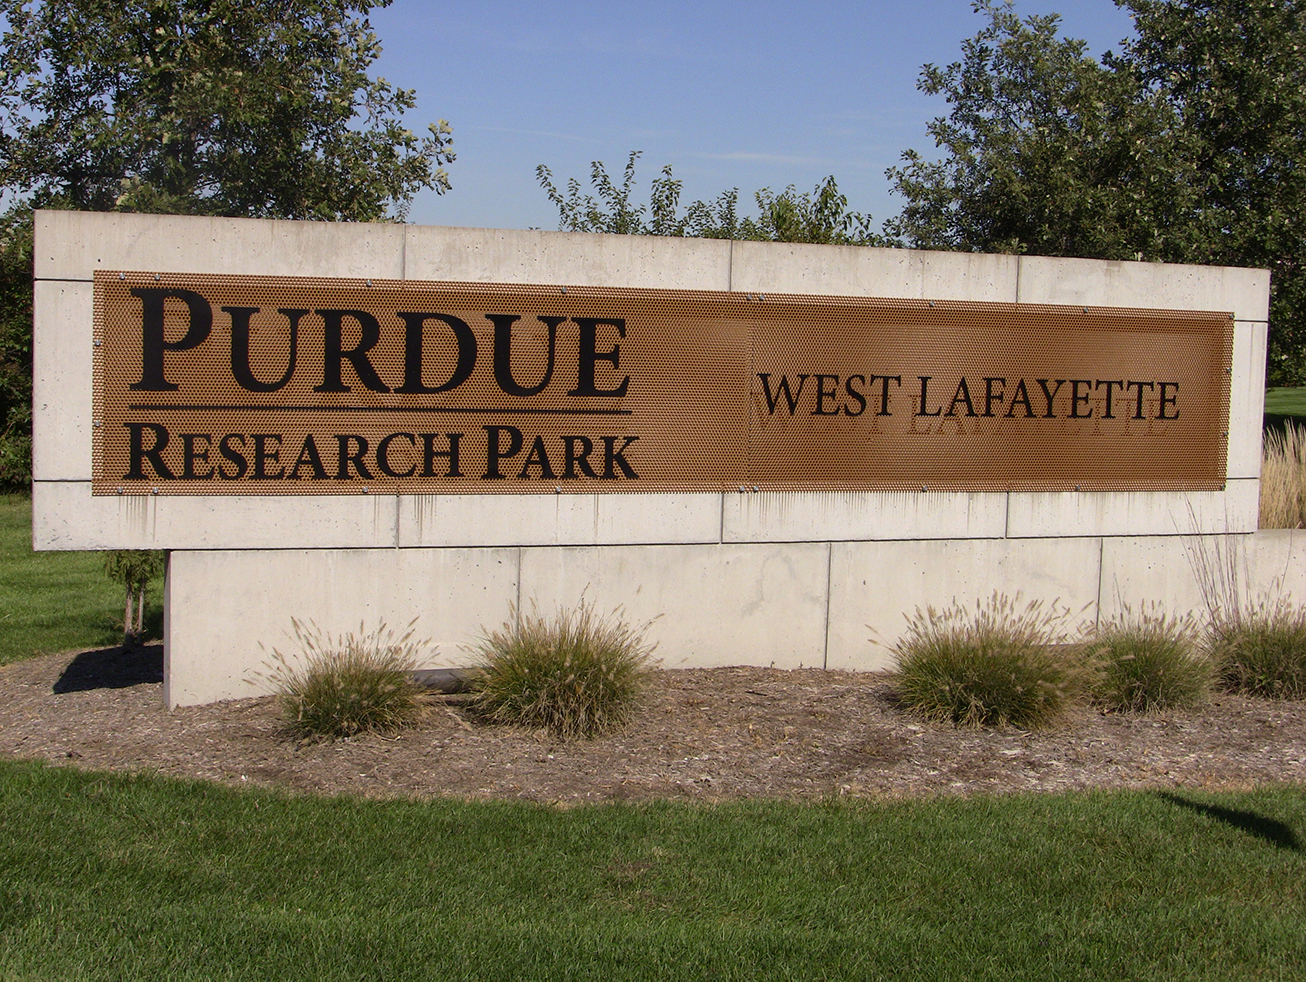 West Lafayette Amenities - Research Park - Purdue University